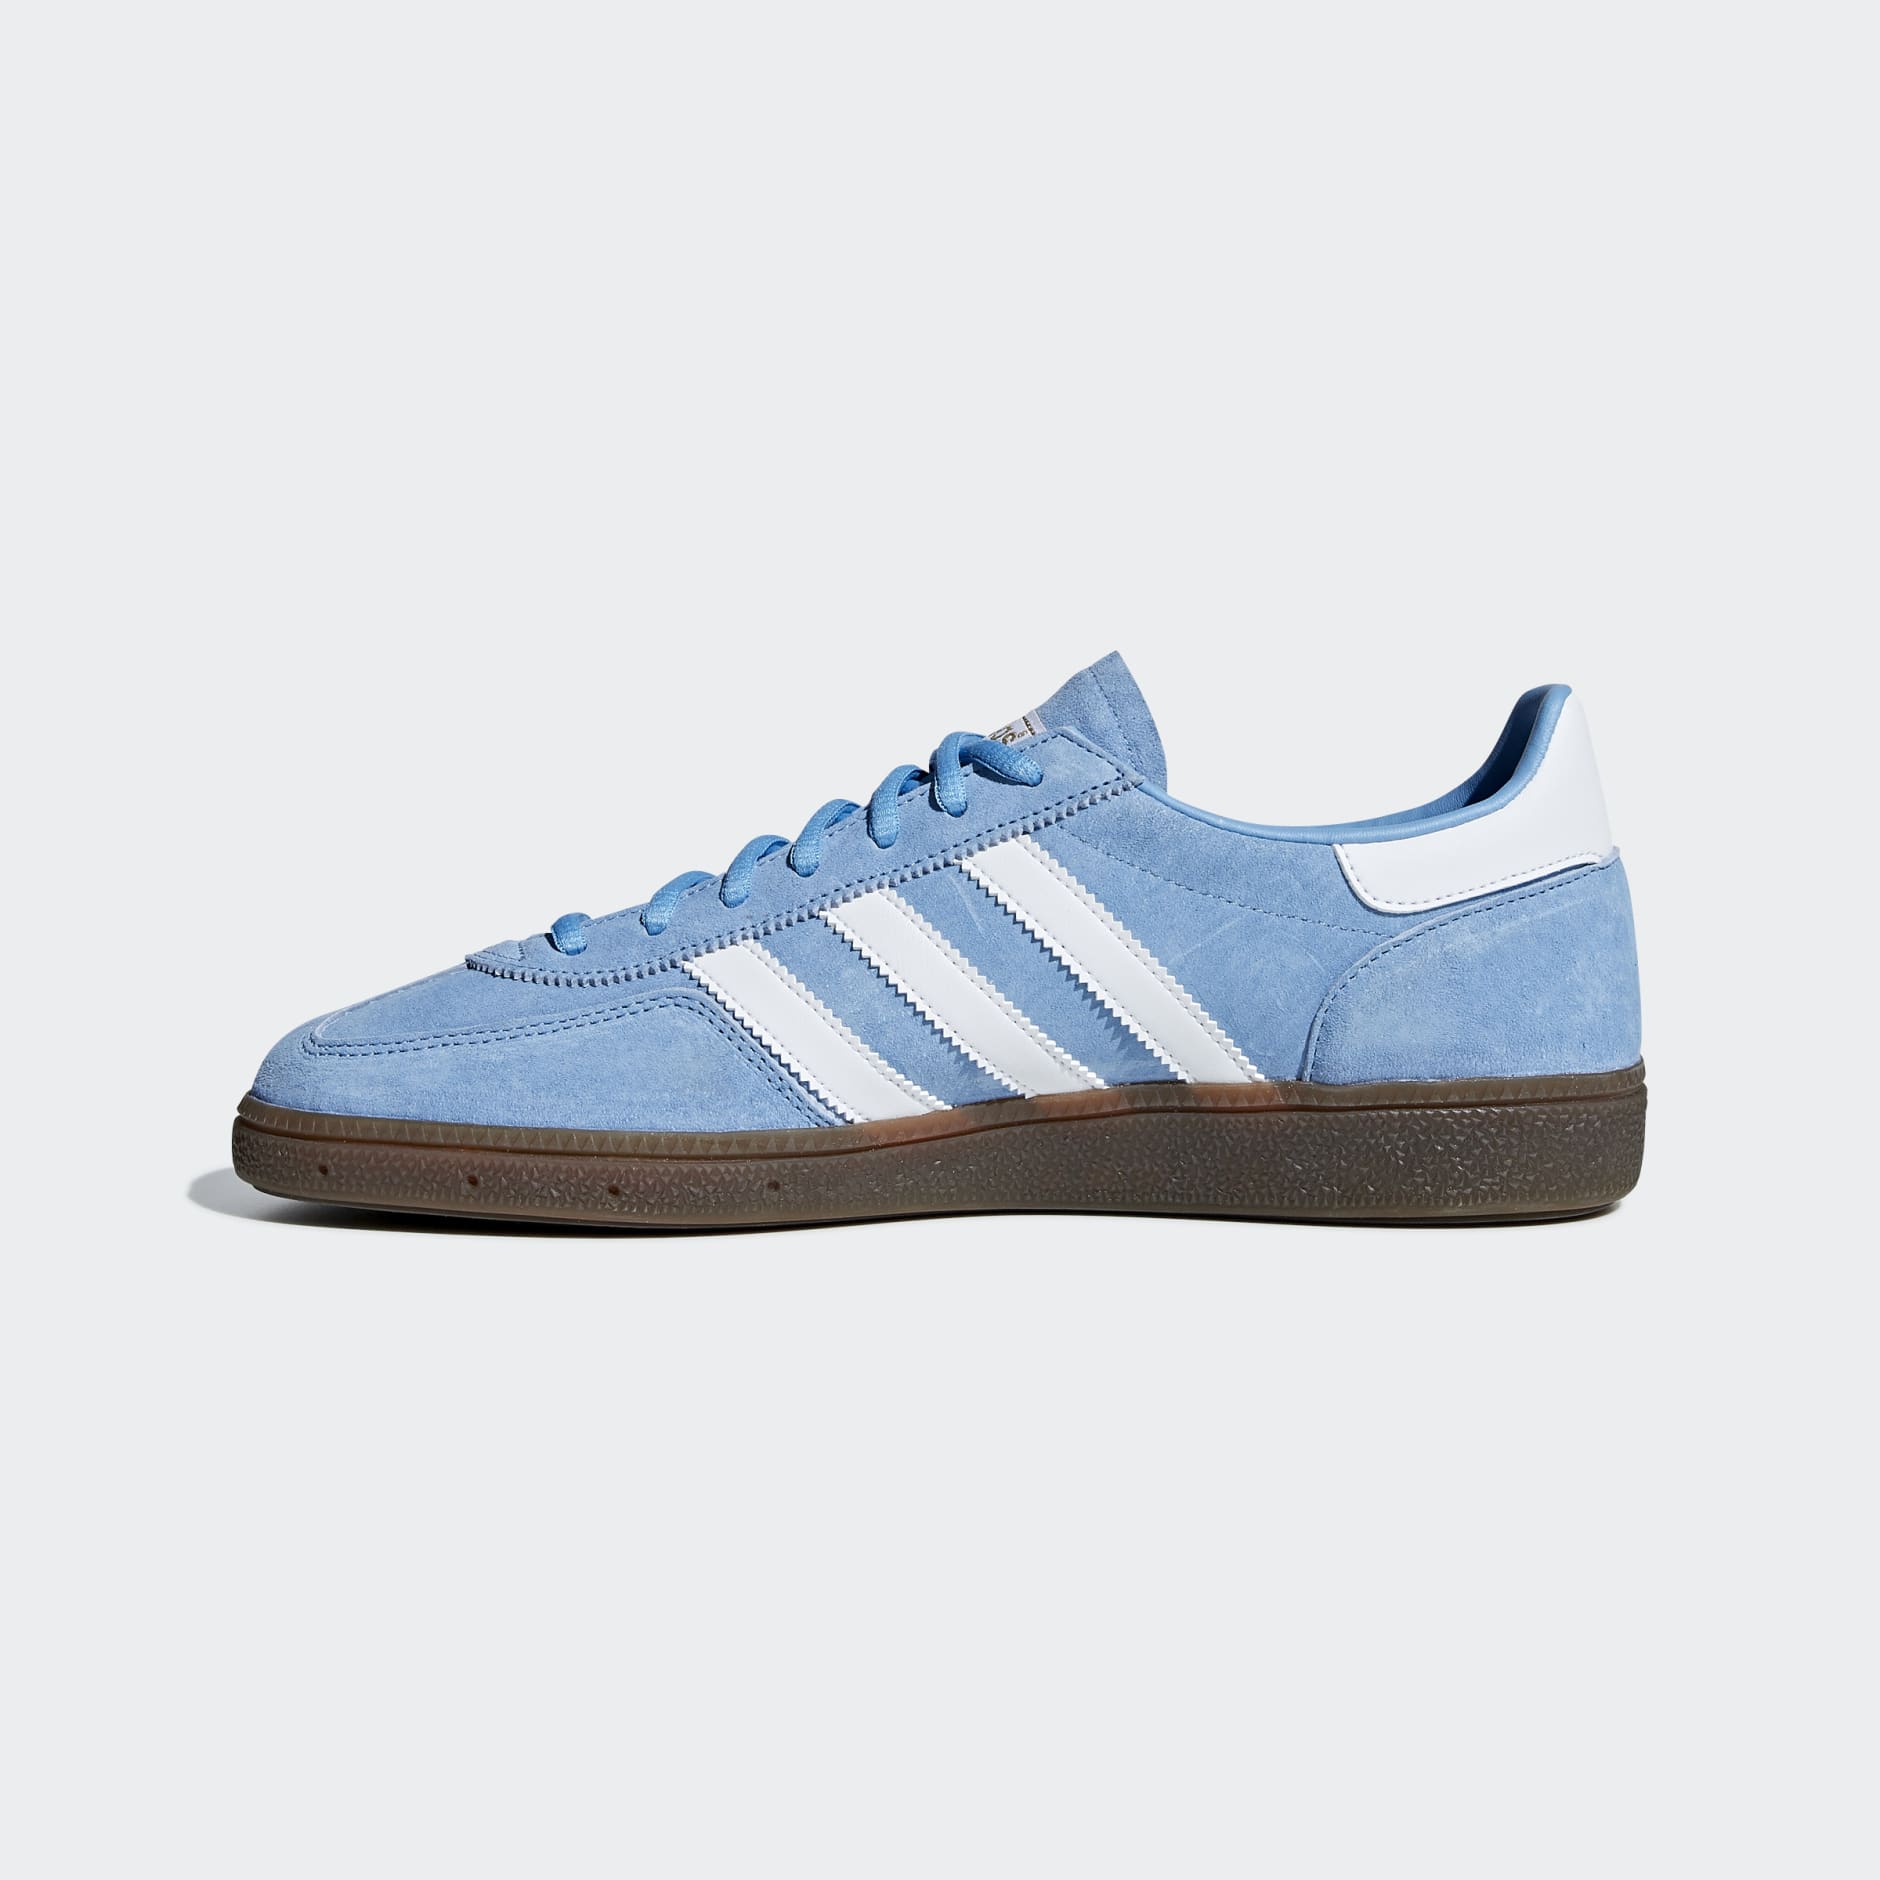 adidas Originals Handball Spezial gum sole trainers in light blue